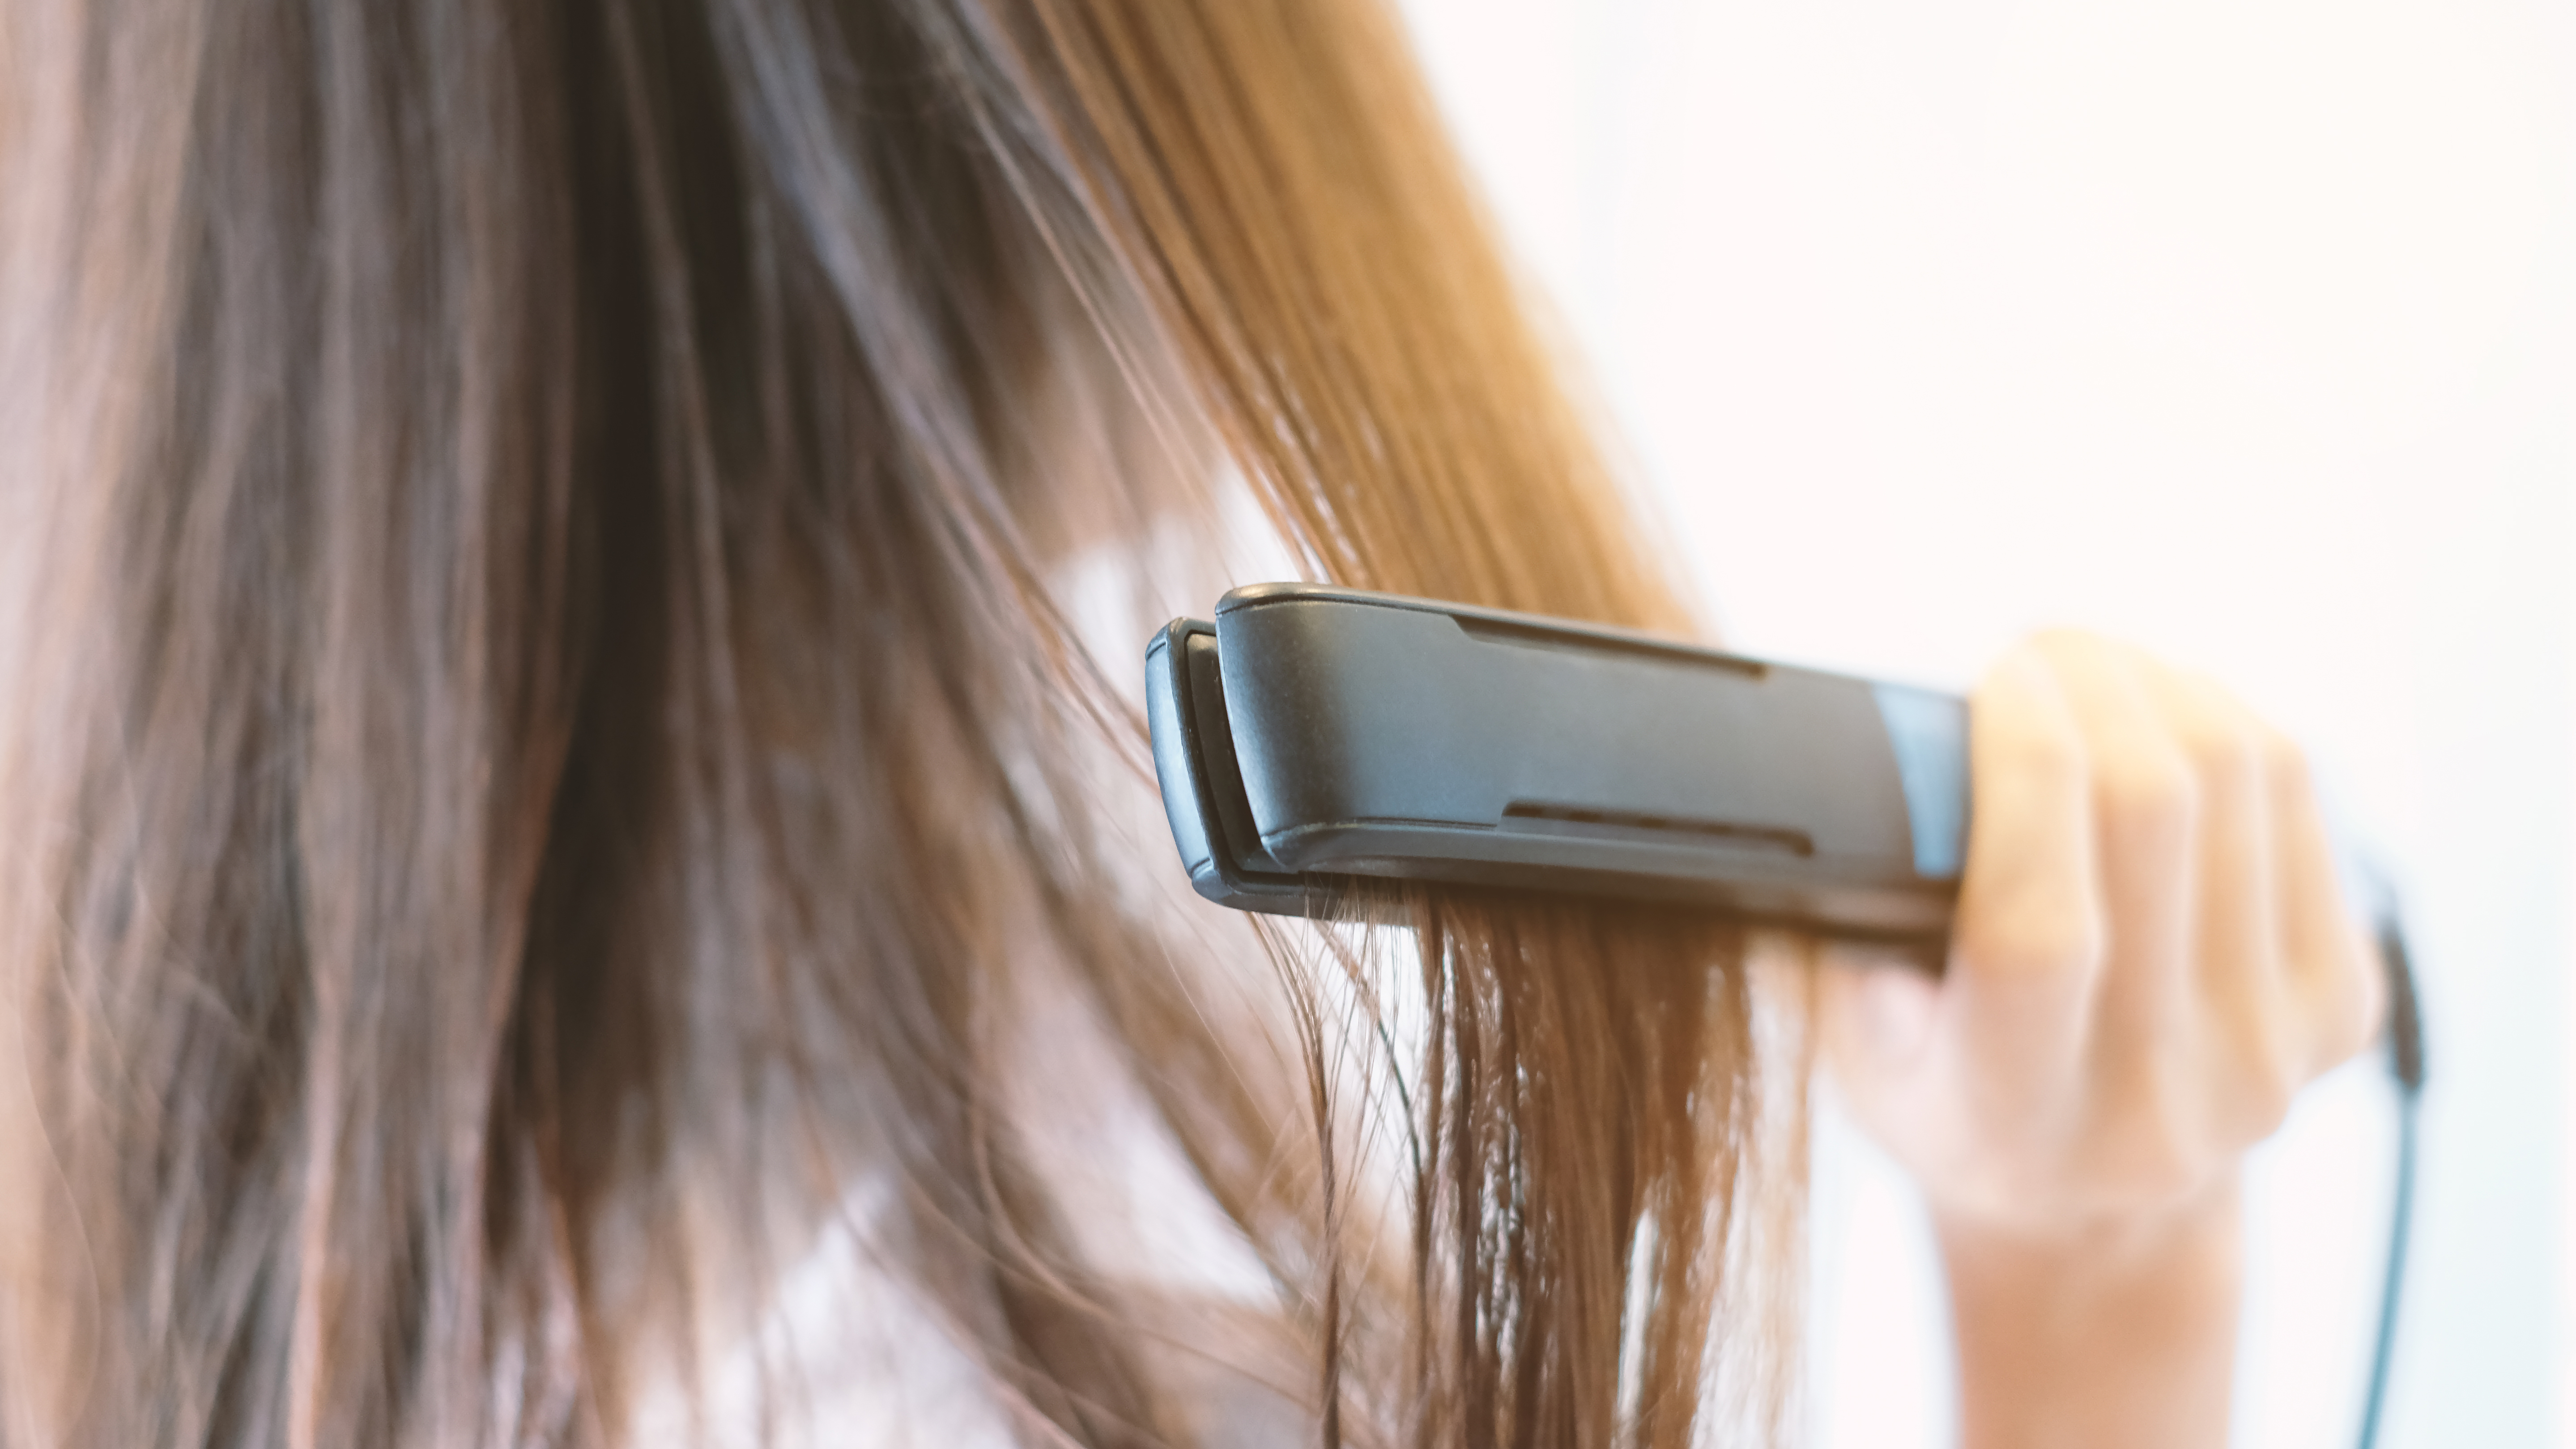 El descanso de la planchita de pelo y las bucleras va a ayudar al cabello (Shutterstock)